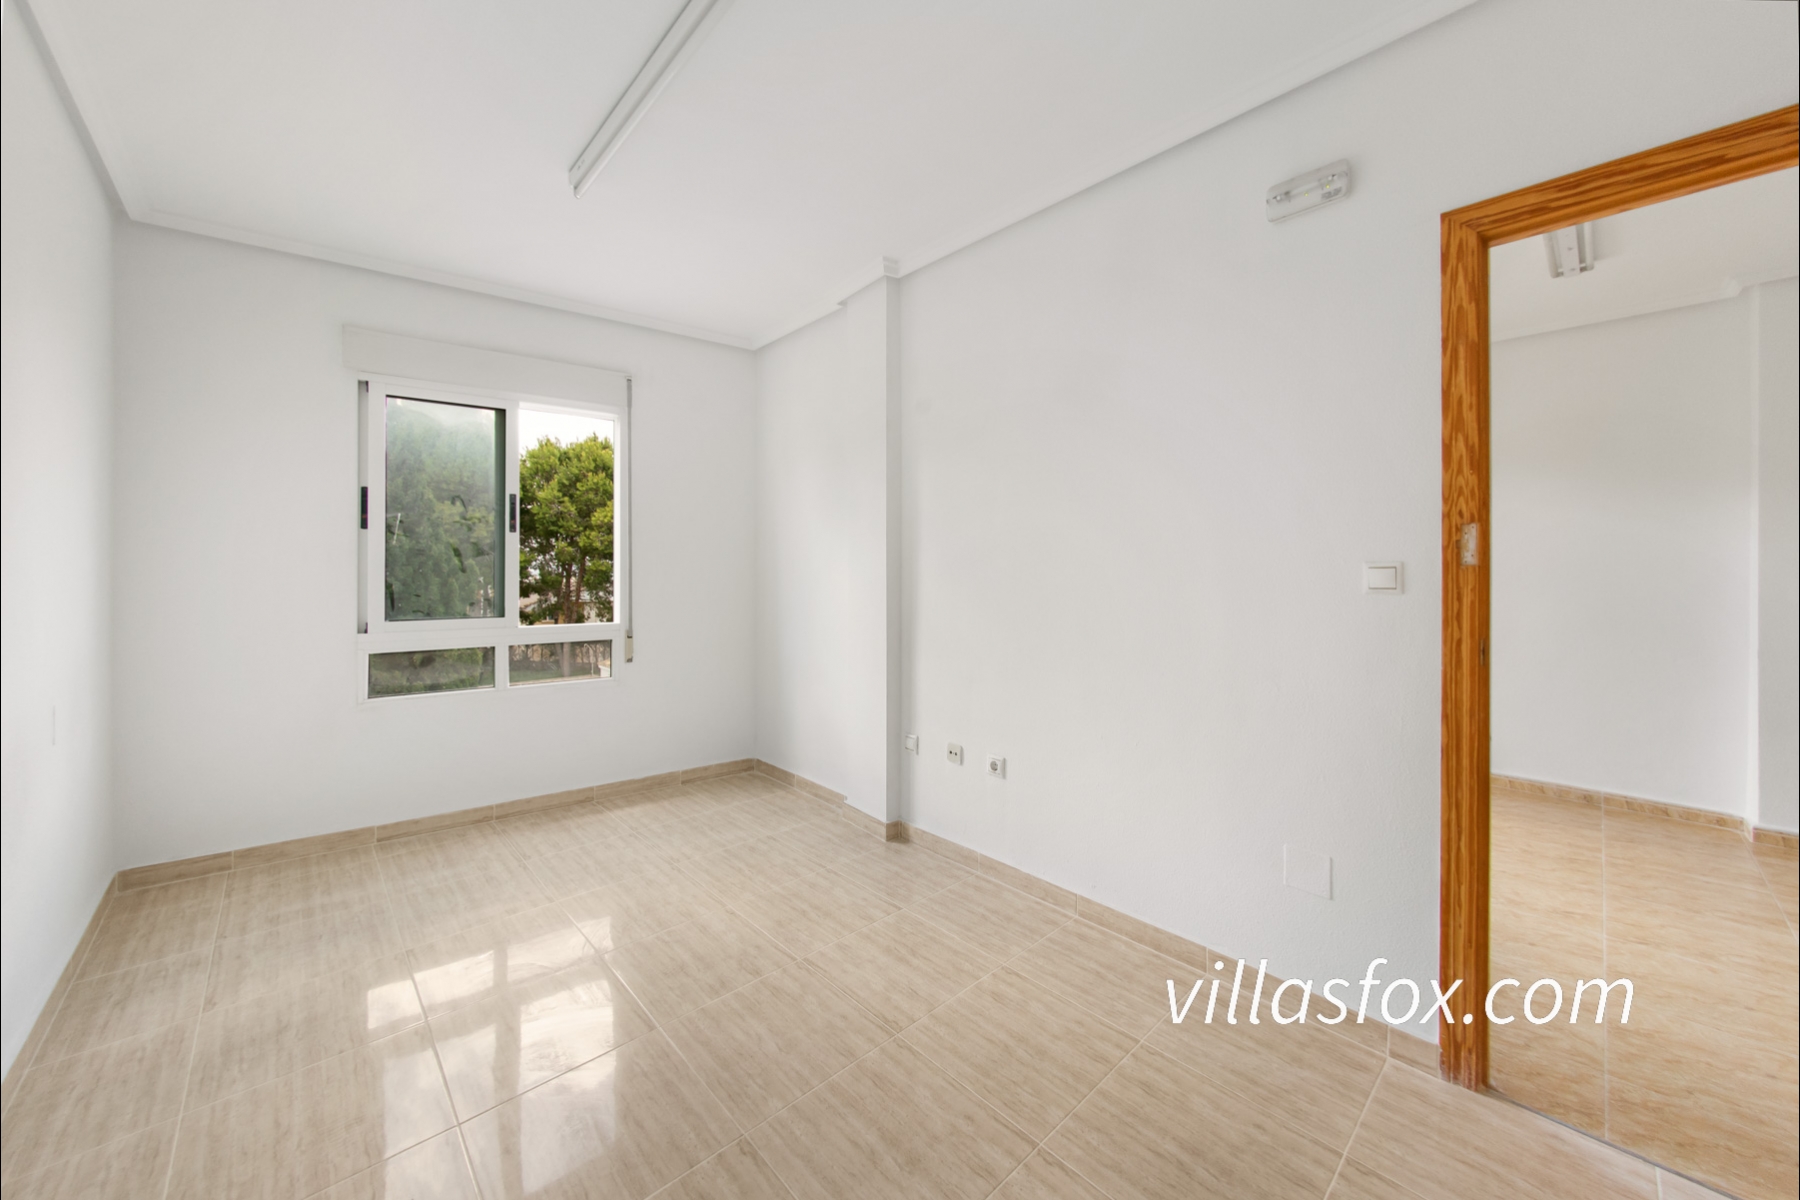 2-bedroom, 1st-floor apartment with lift, San Miguel de Salinas